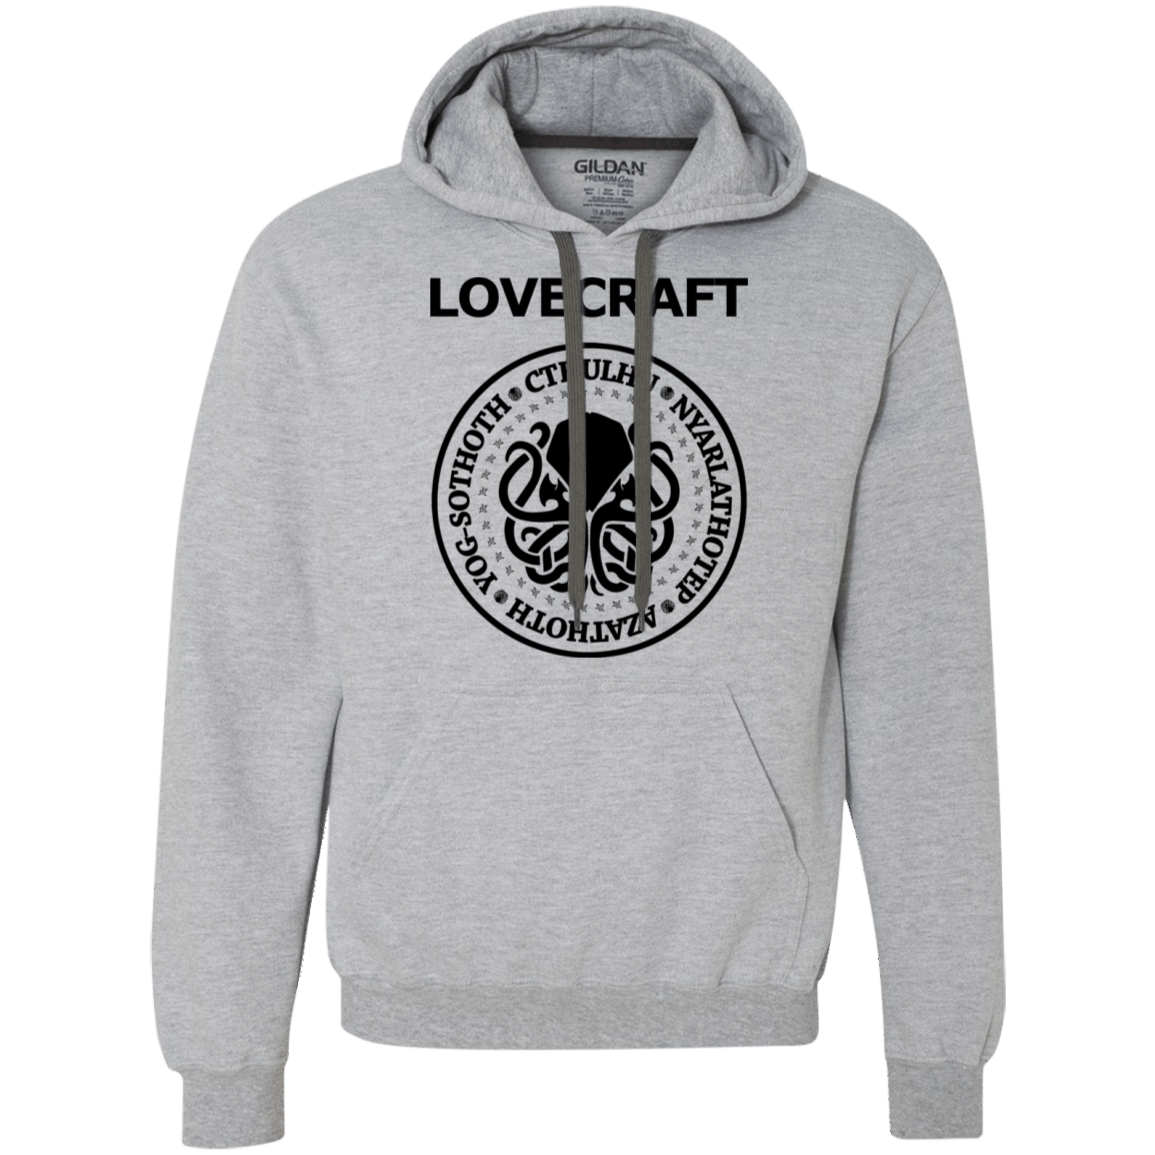 Sweatshirts Sport Grey / S Lovecraft Premium Fleece Hoodie